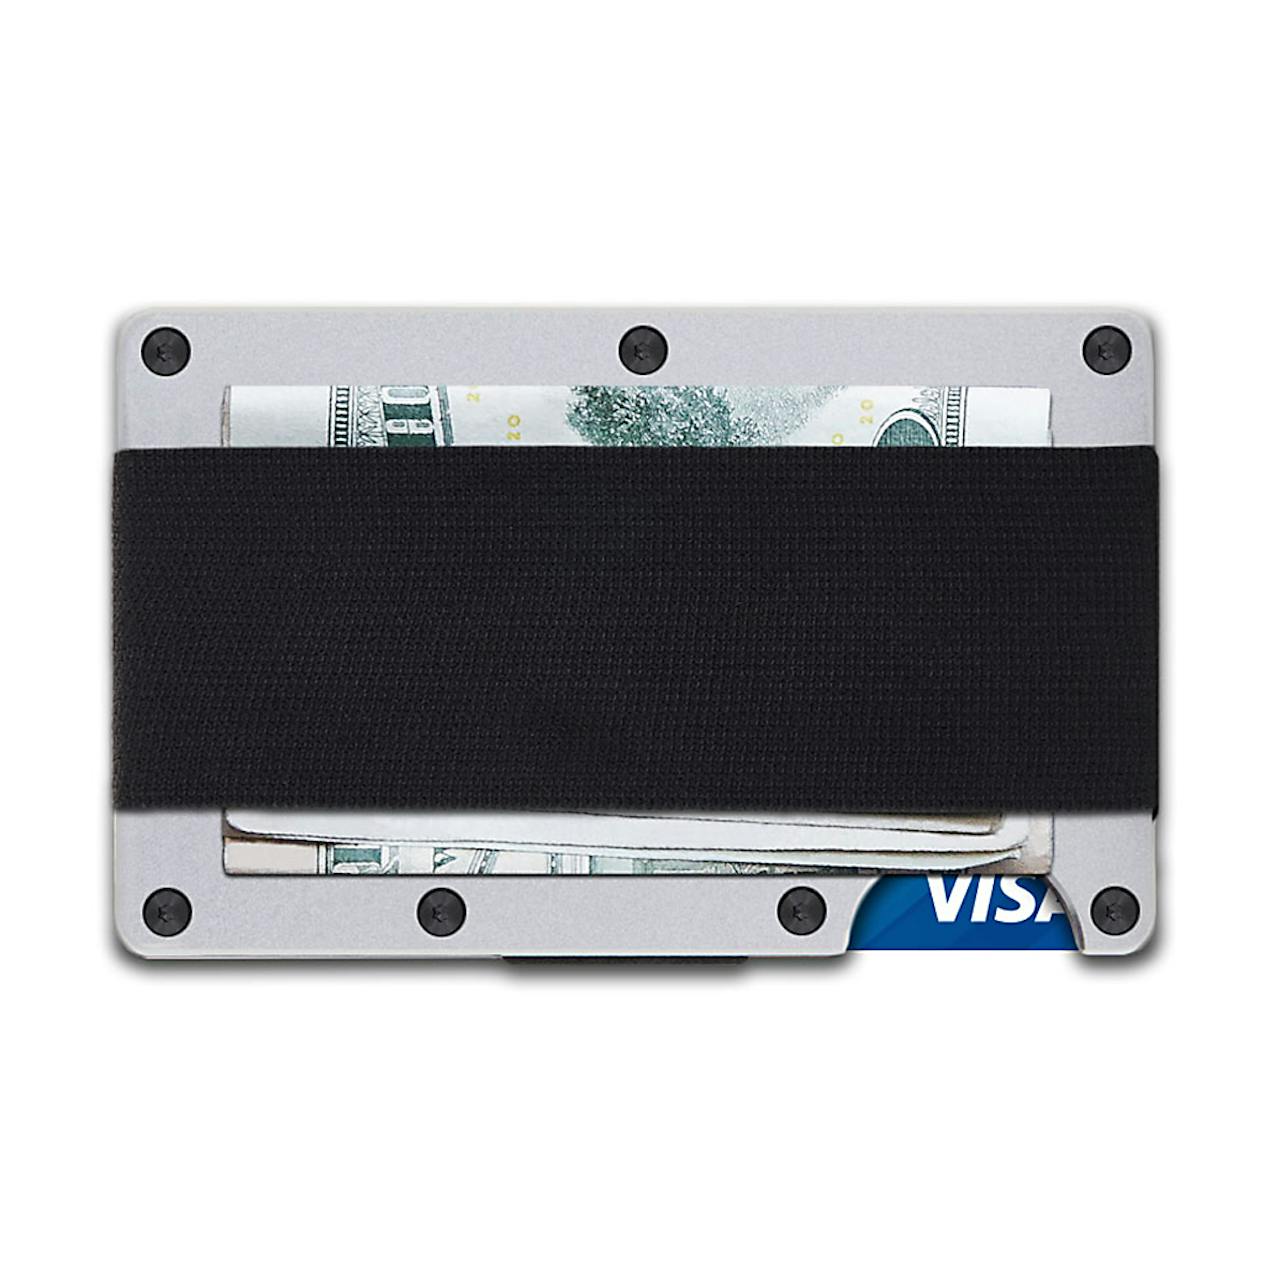 The Ridge Aluminum Wallet + Cash Strap